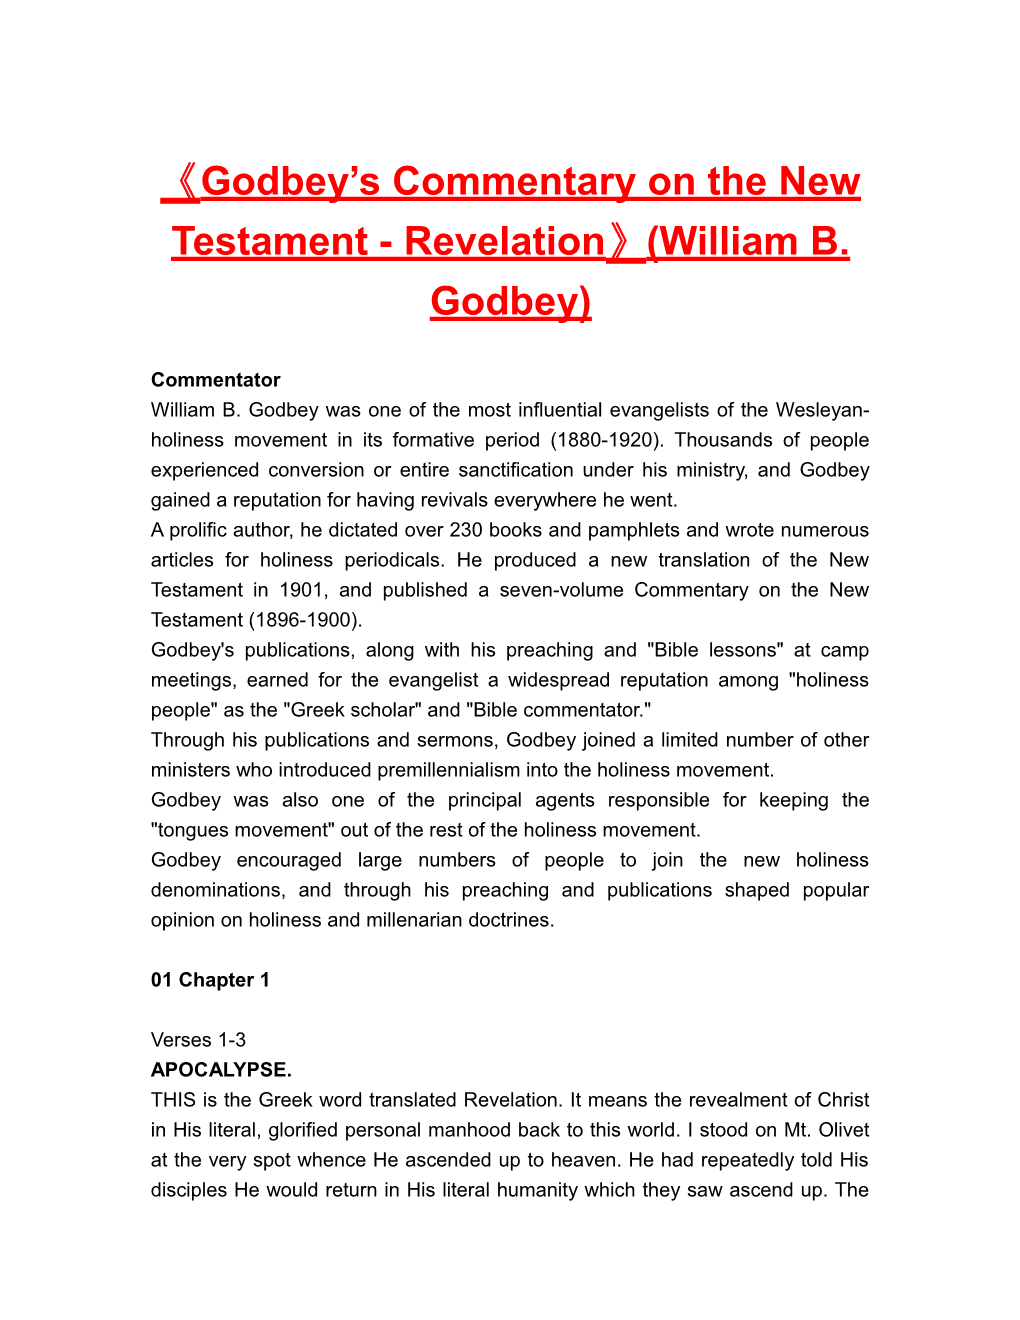 Godbey Scommentary on the New Testament-Revelation (William B. Godbey)